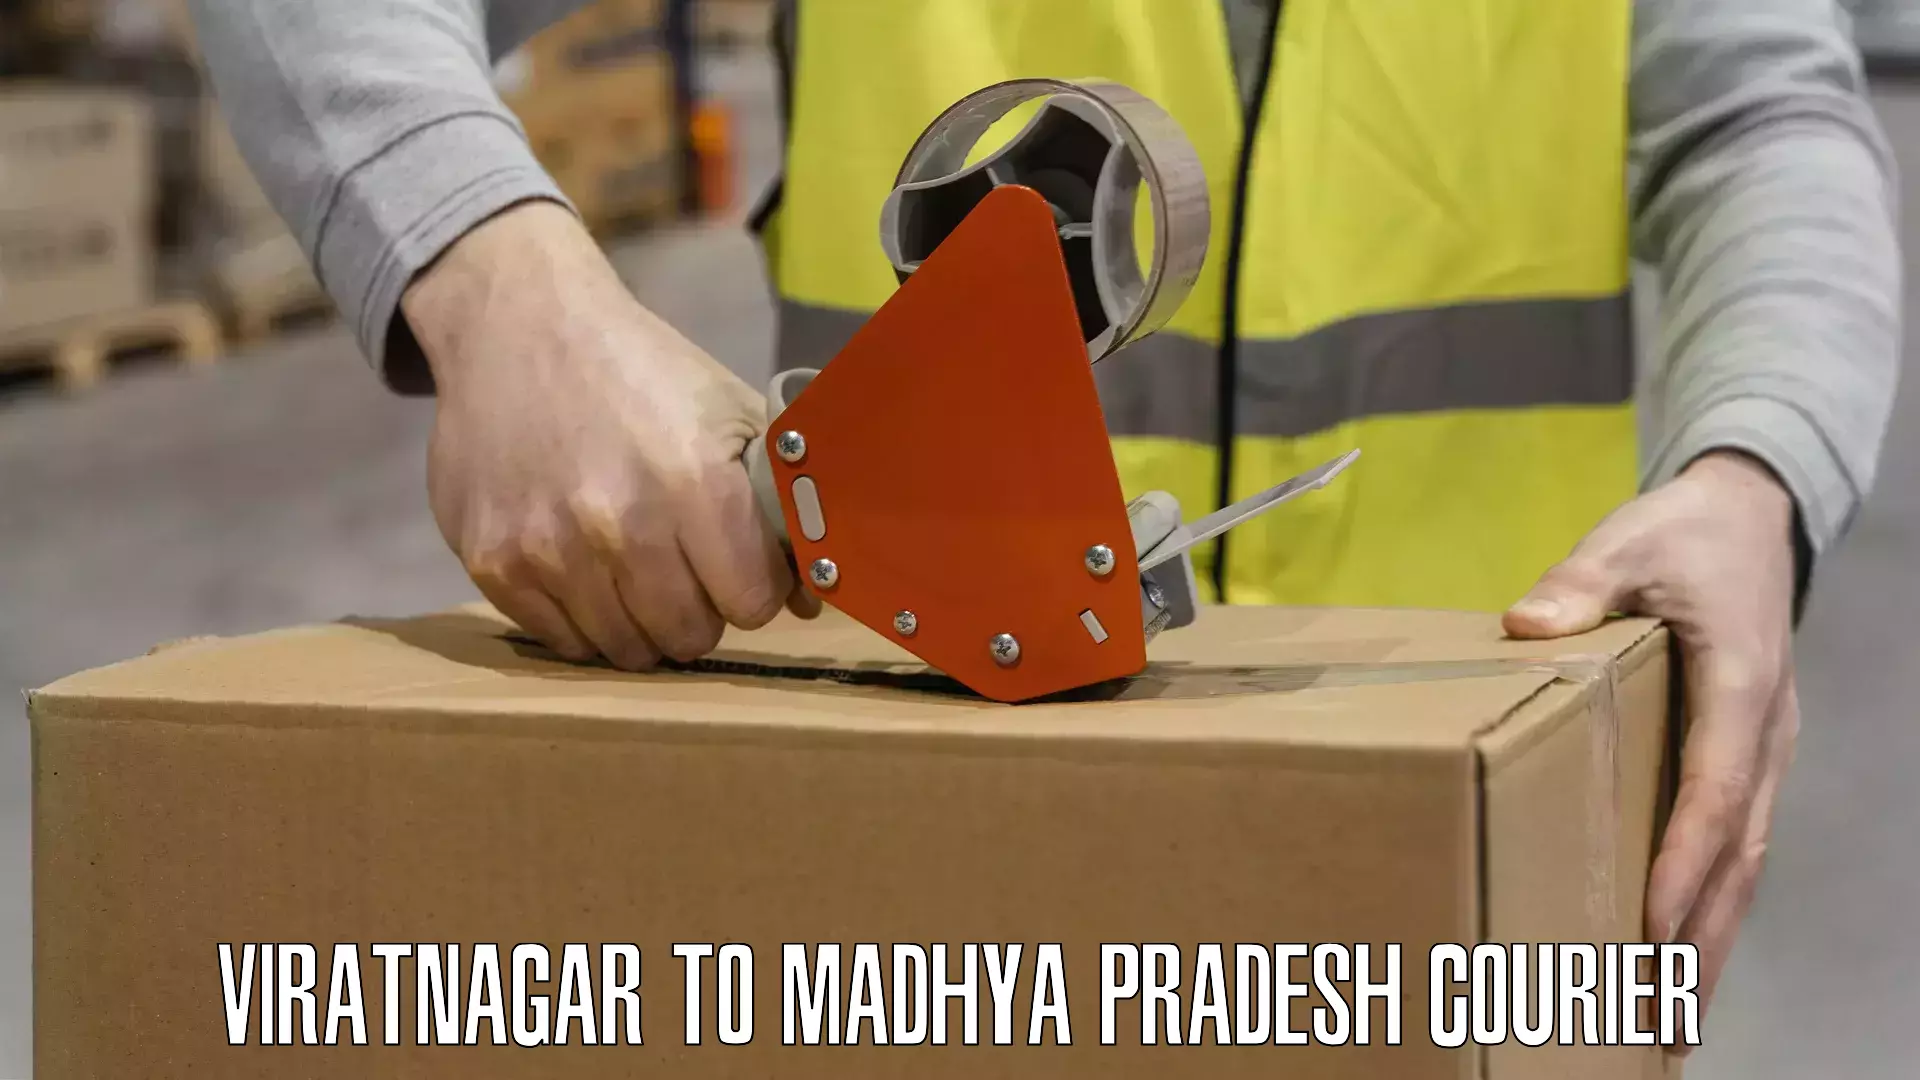 Customer-centric shipping Viratnagar to Amarwara